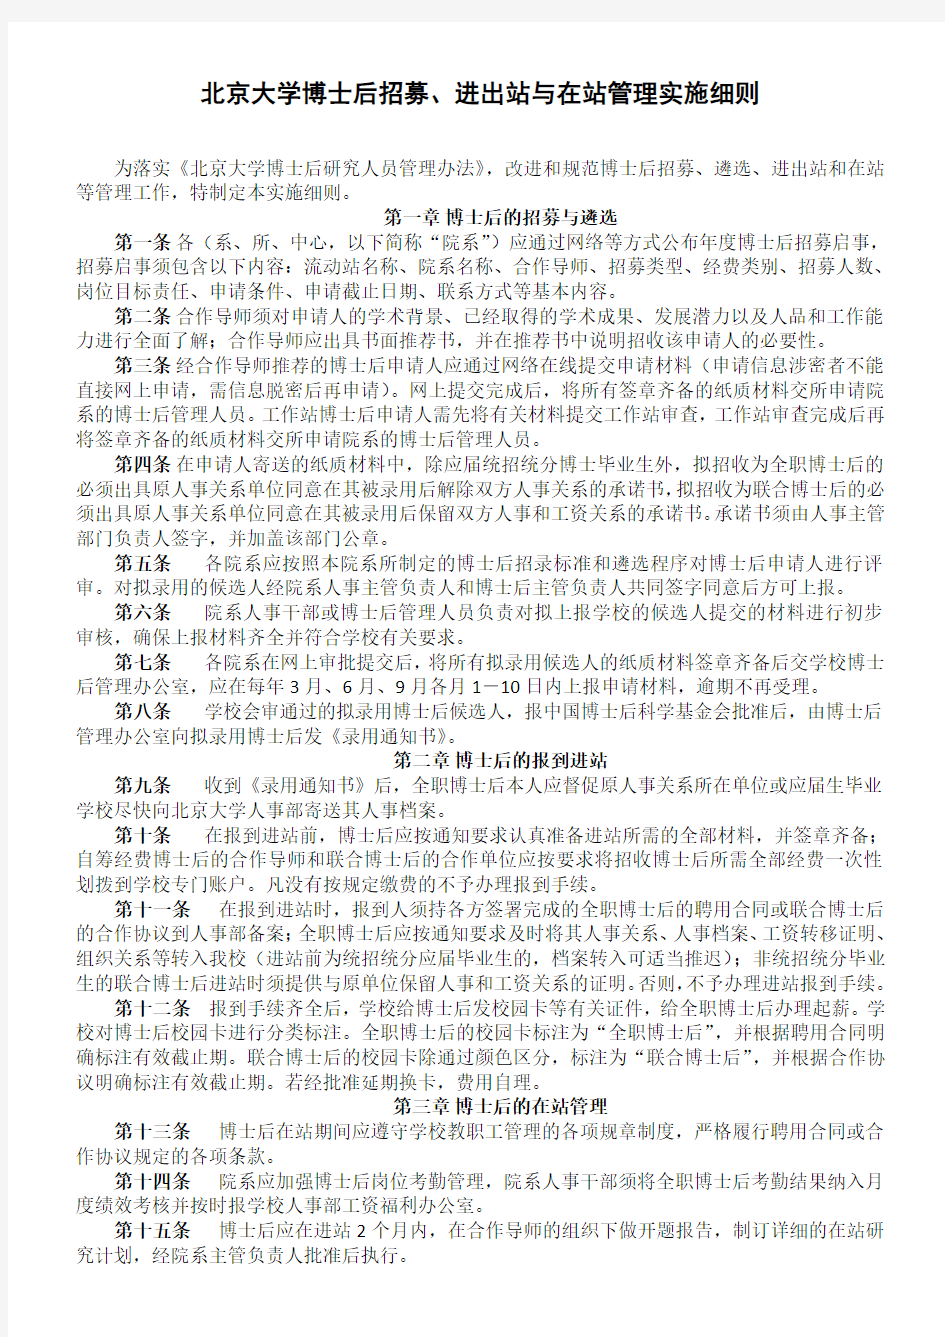 北京大学博士后招募进出站与在站管理实施细则